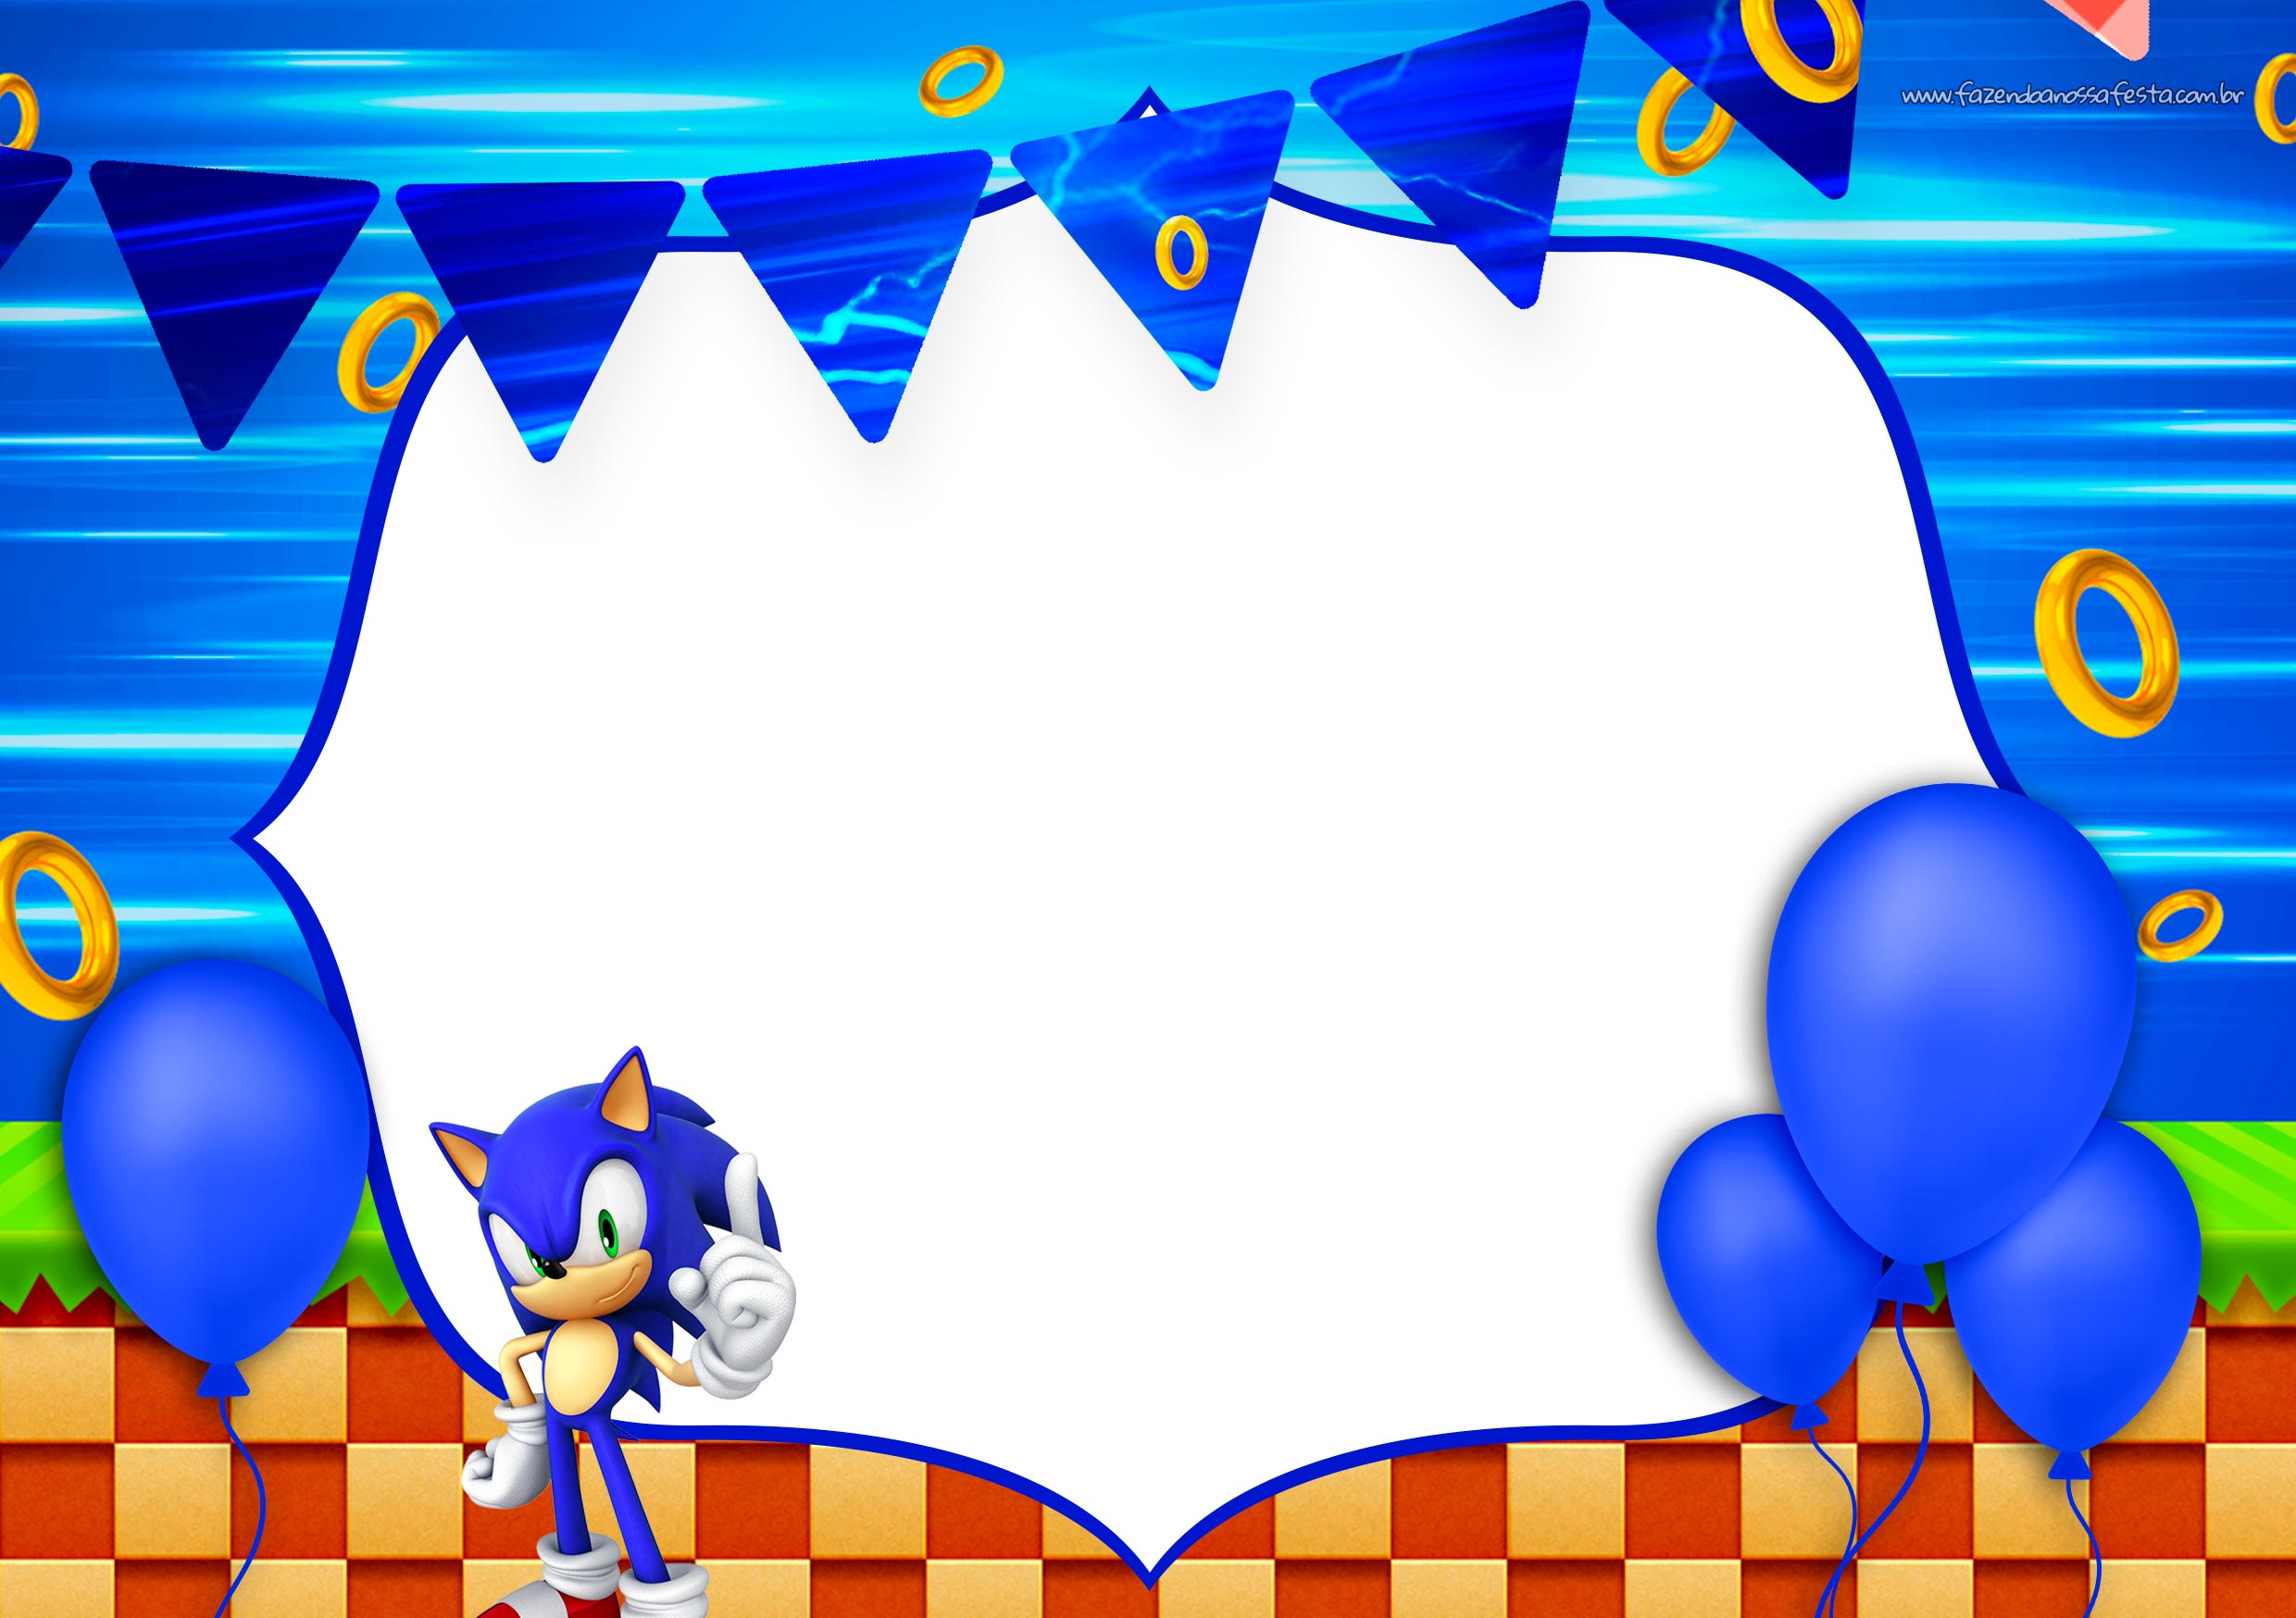 Convite Digital Sonic gratis - Fazendo a Nossa Festa